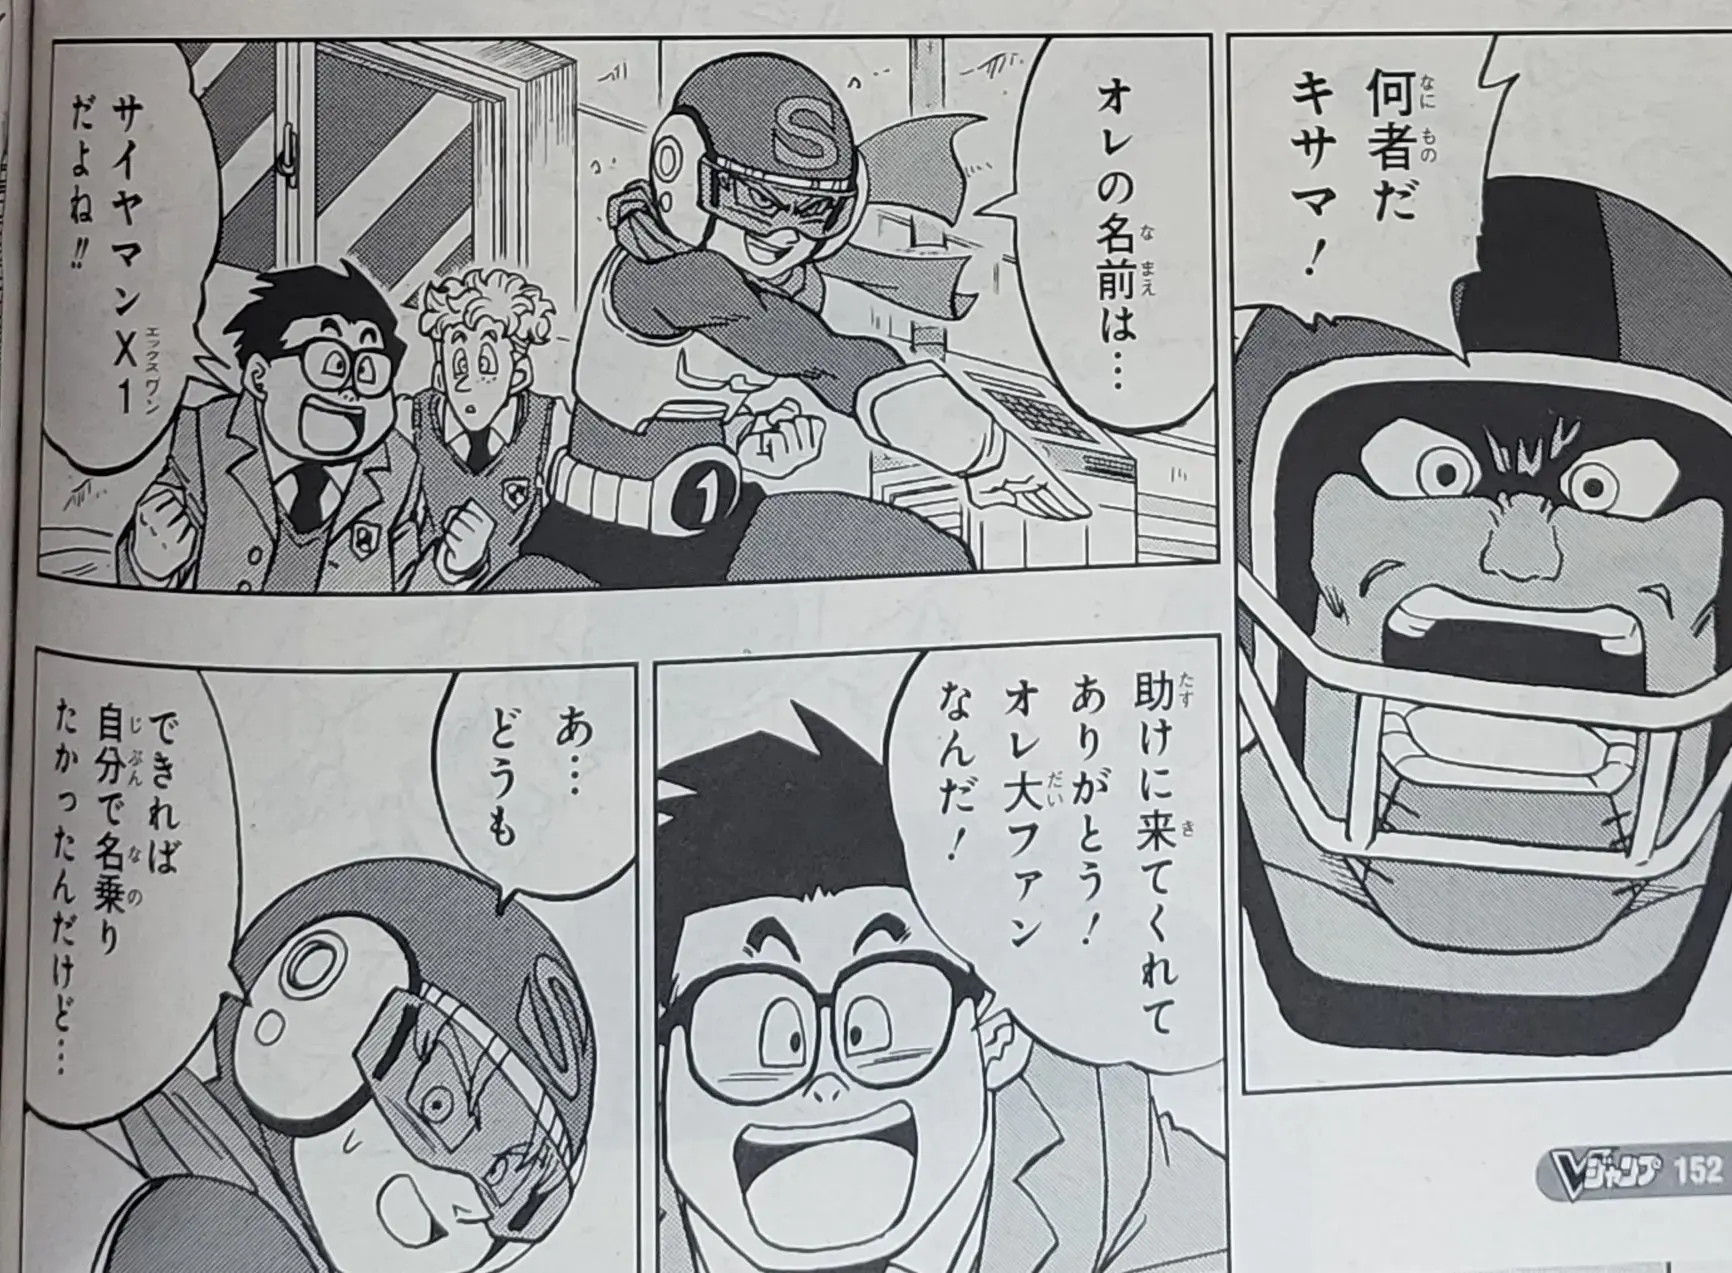 Dragon Ball Super chapitre 88 du manga a été dévoilé avec des images et un résumé ; Goten et Trunks sont des super-héros. 9 2